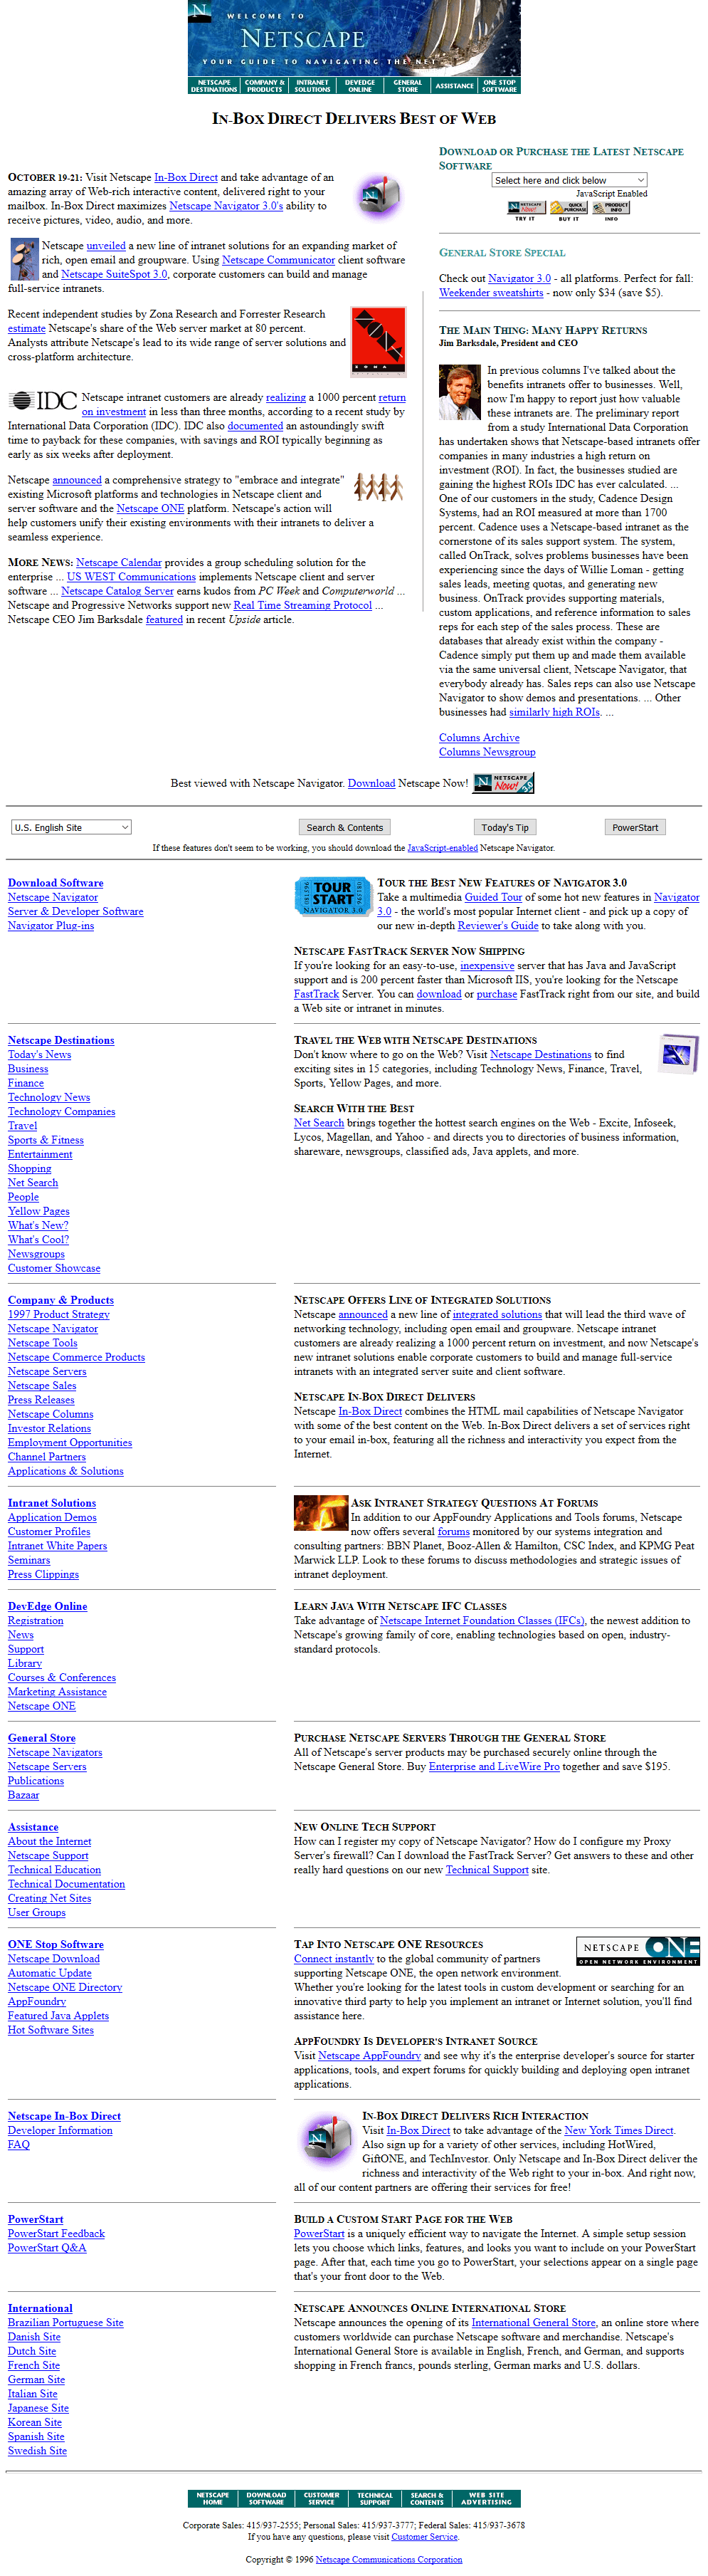 Netscape in 1996